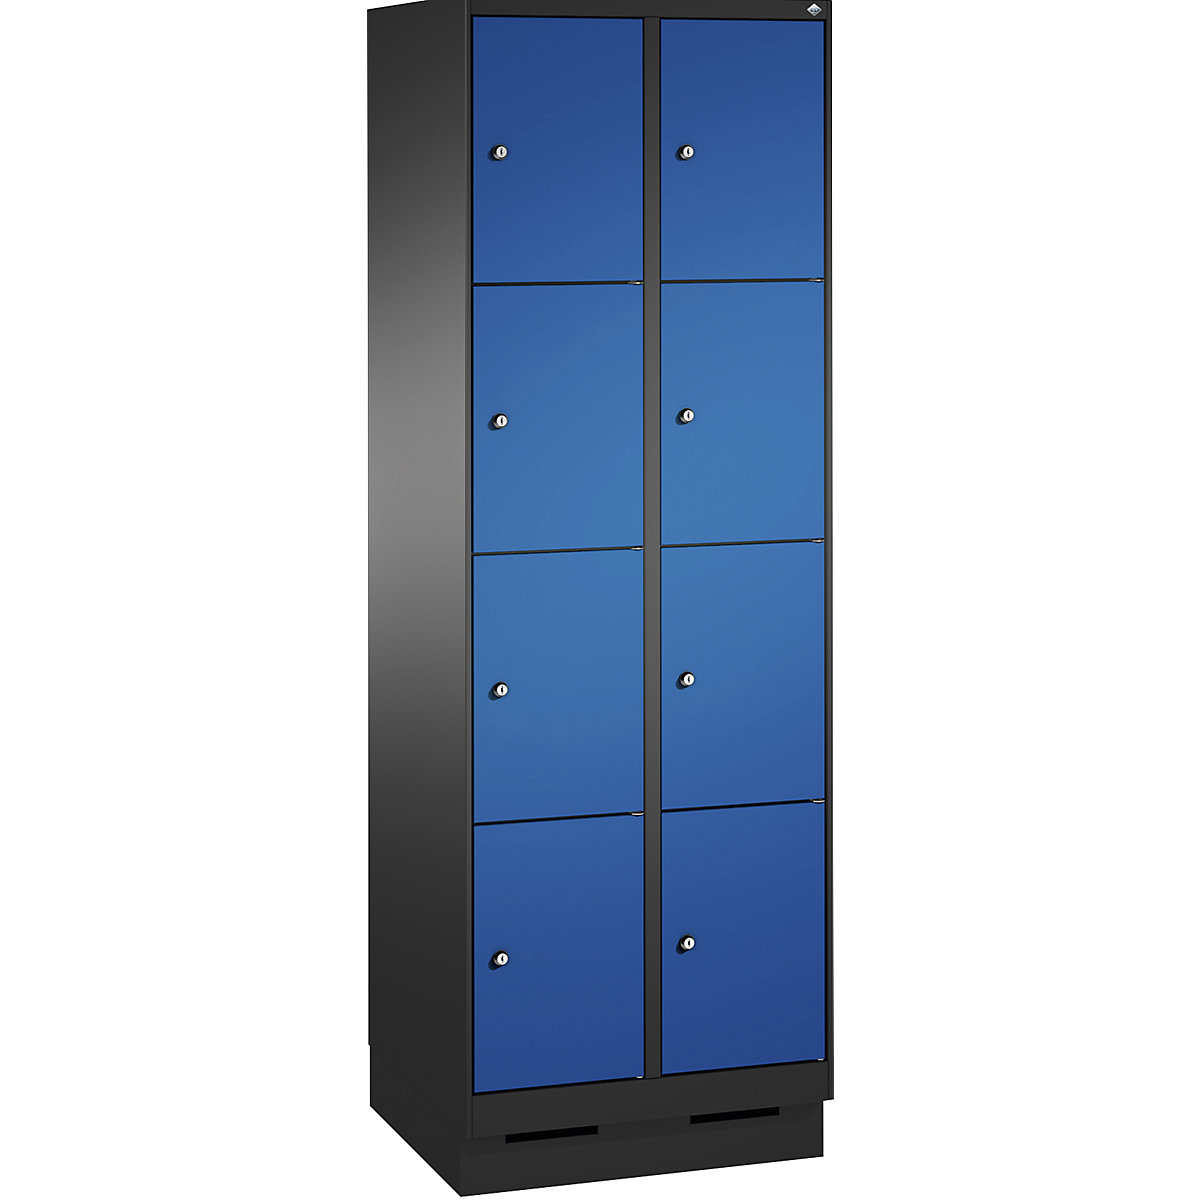 Armoire à casiers sur socle EVOLO – C+P, 2 compartiments, 4 casiers chacun, largeur compartiments 300 mm, gris noir / bleu gentiane-2